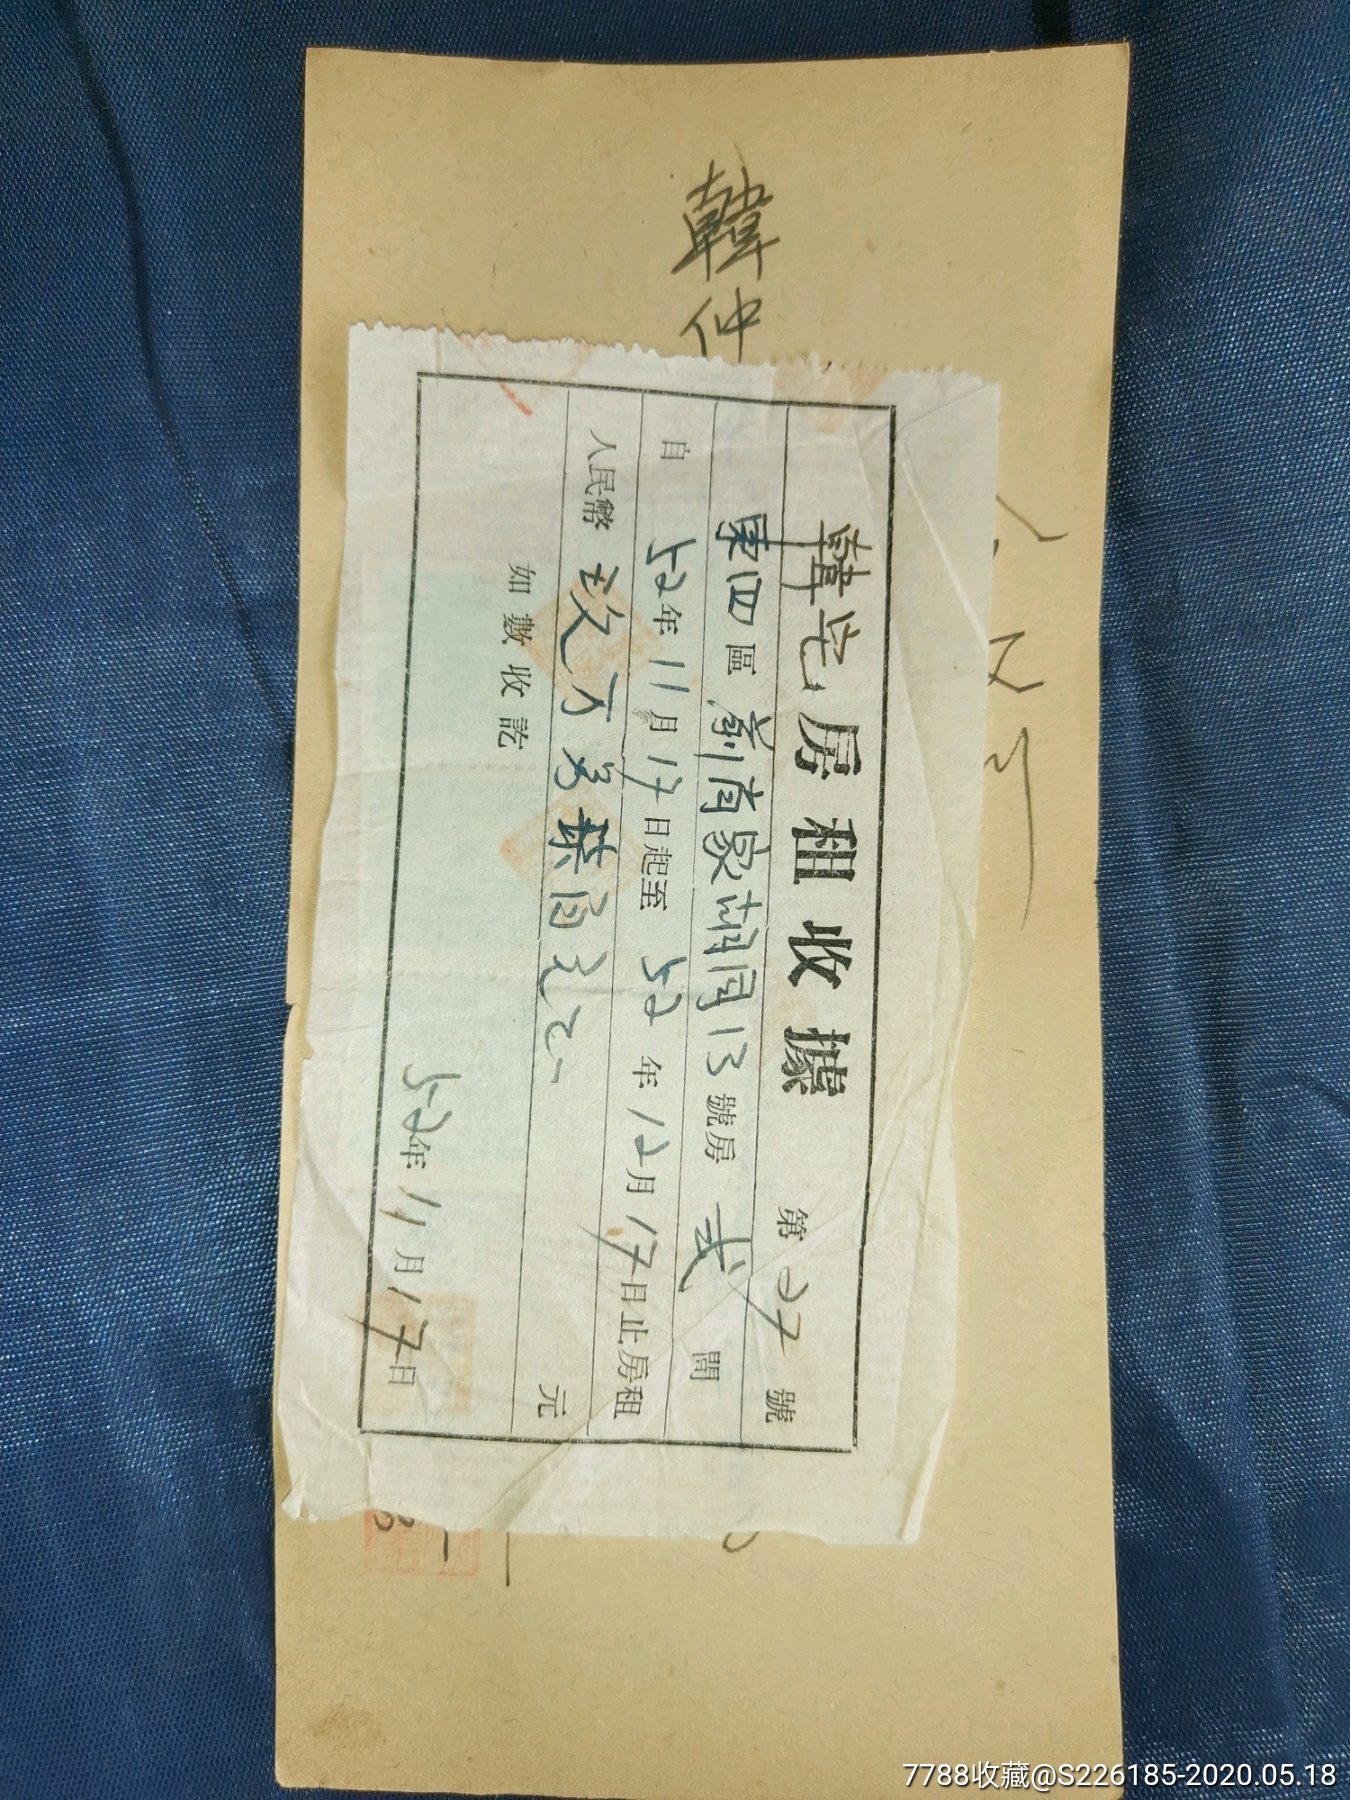 背面有五张印花税票,正面是北京四合院韩宅的手写单据